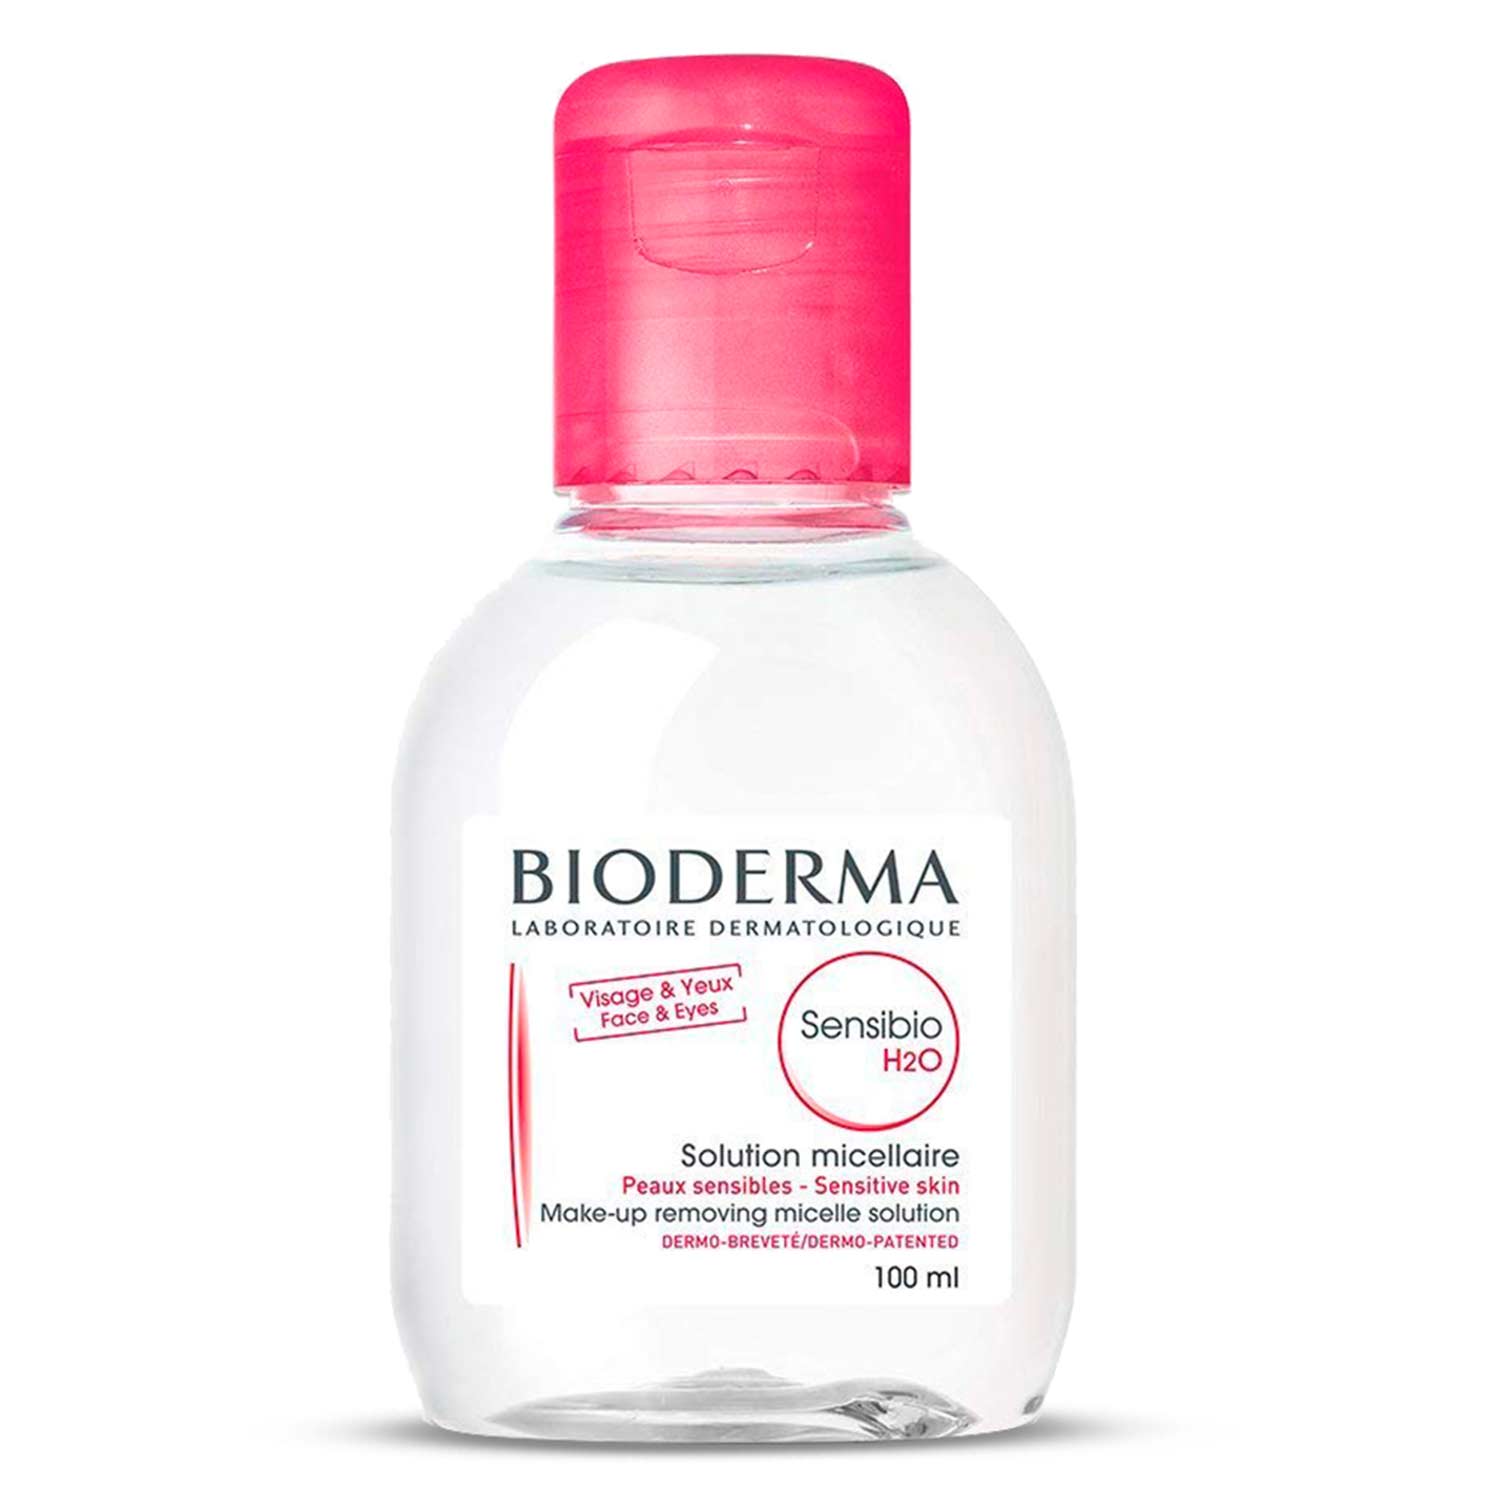 محلول میسلار پاک کننده آرایش بایودرما sensibio H2O